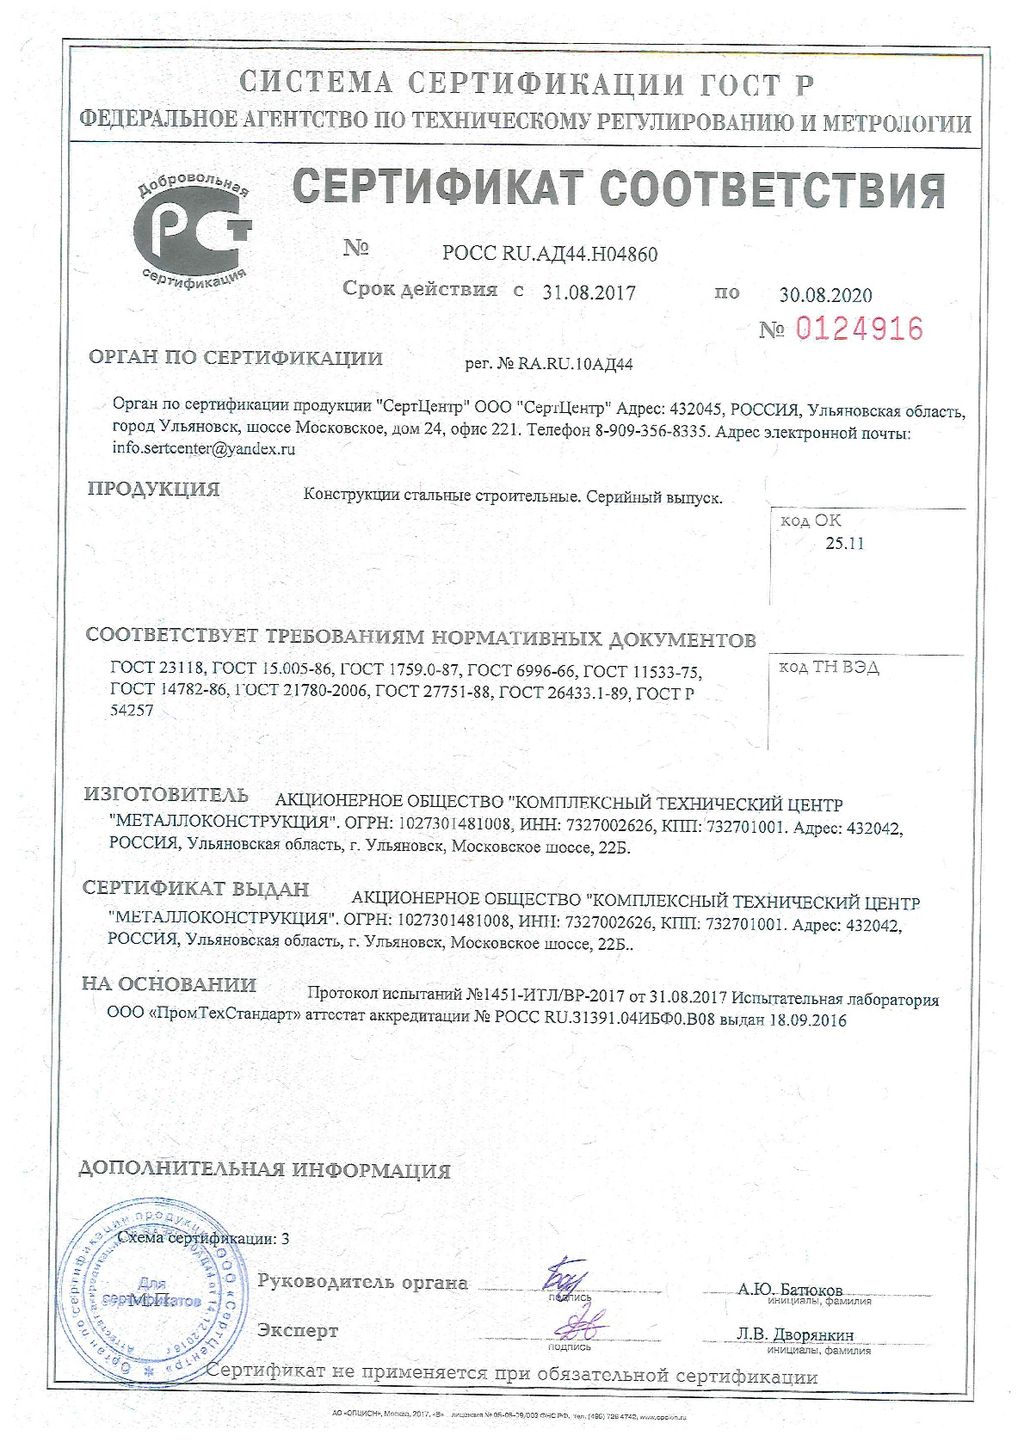 Сертификат соответствия № 0124916, КТЦ Металлоконструкция